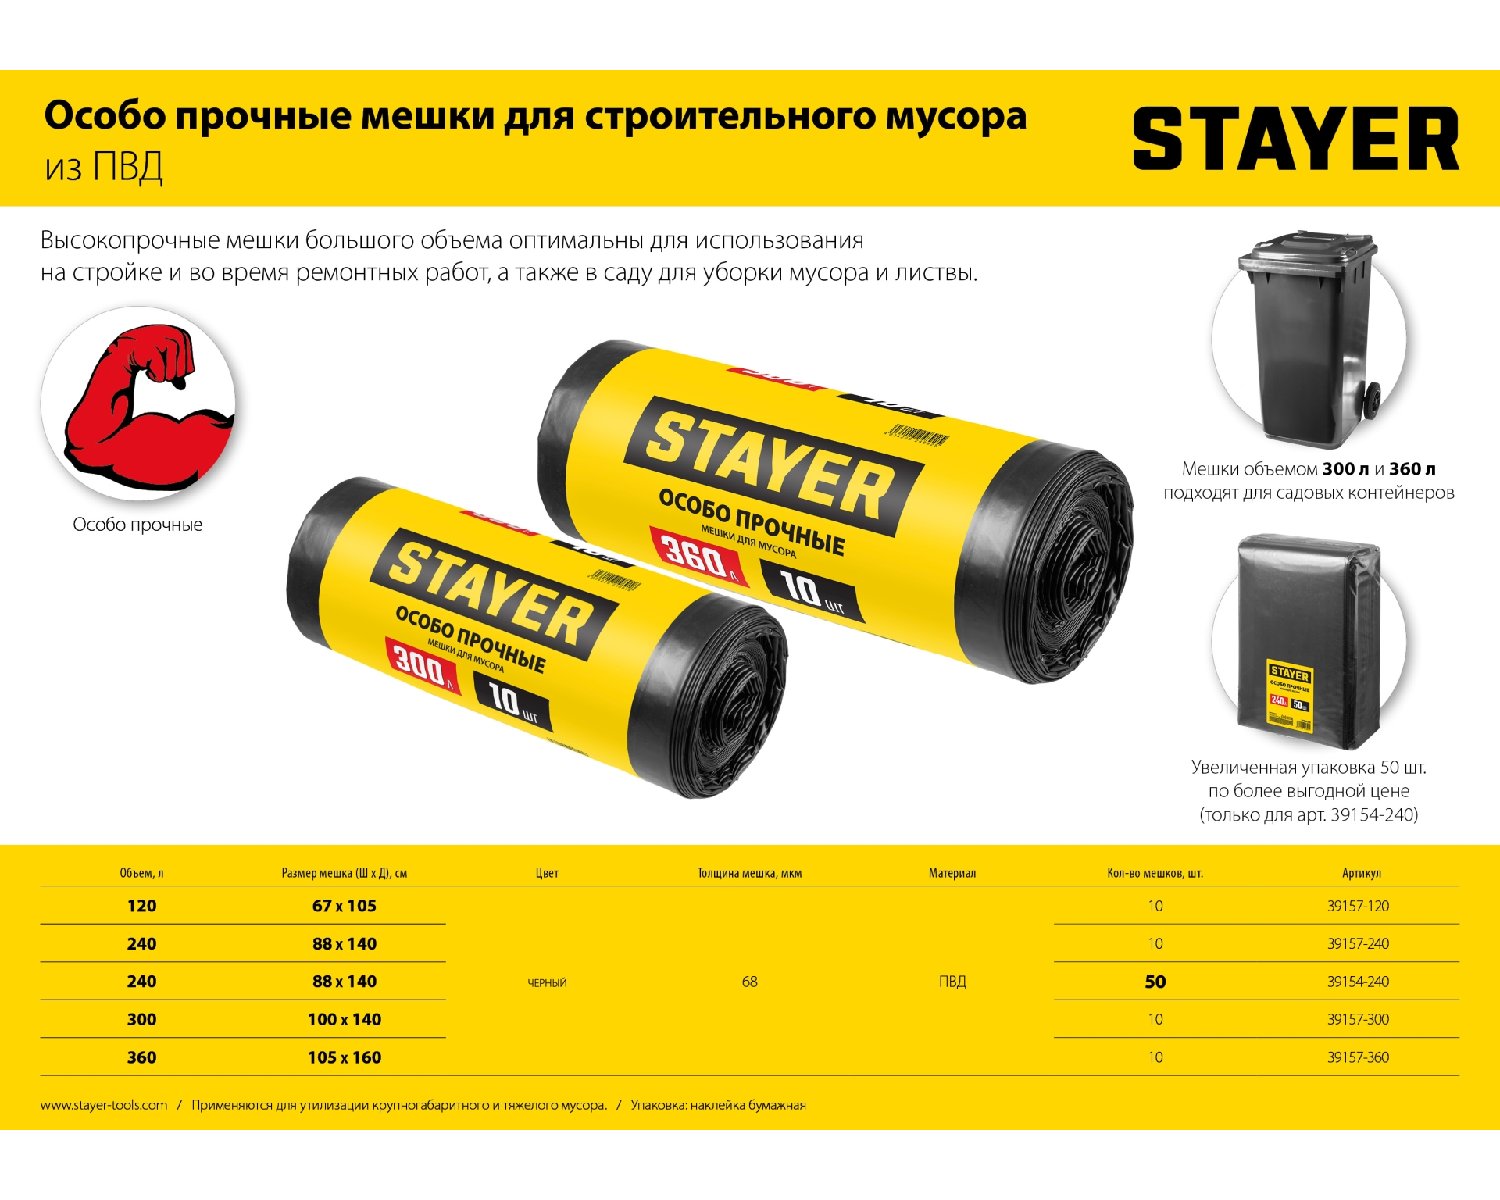 Строительные мусорные мешки STAYER 300л, 10шт, особопрочные, черные, HEAVY DUTY (39157-300)